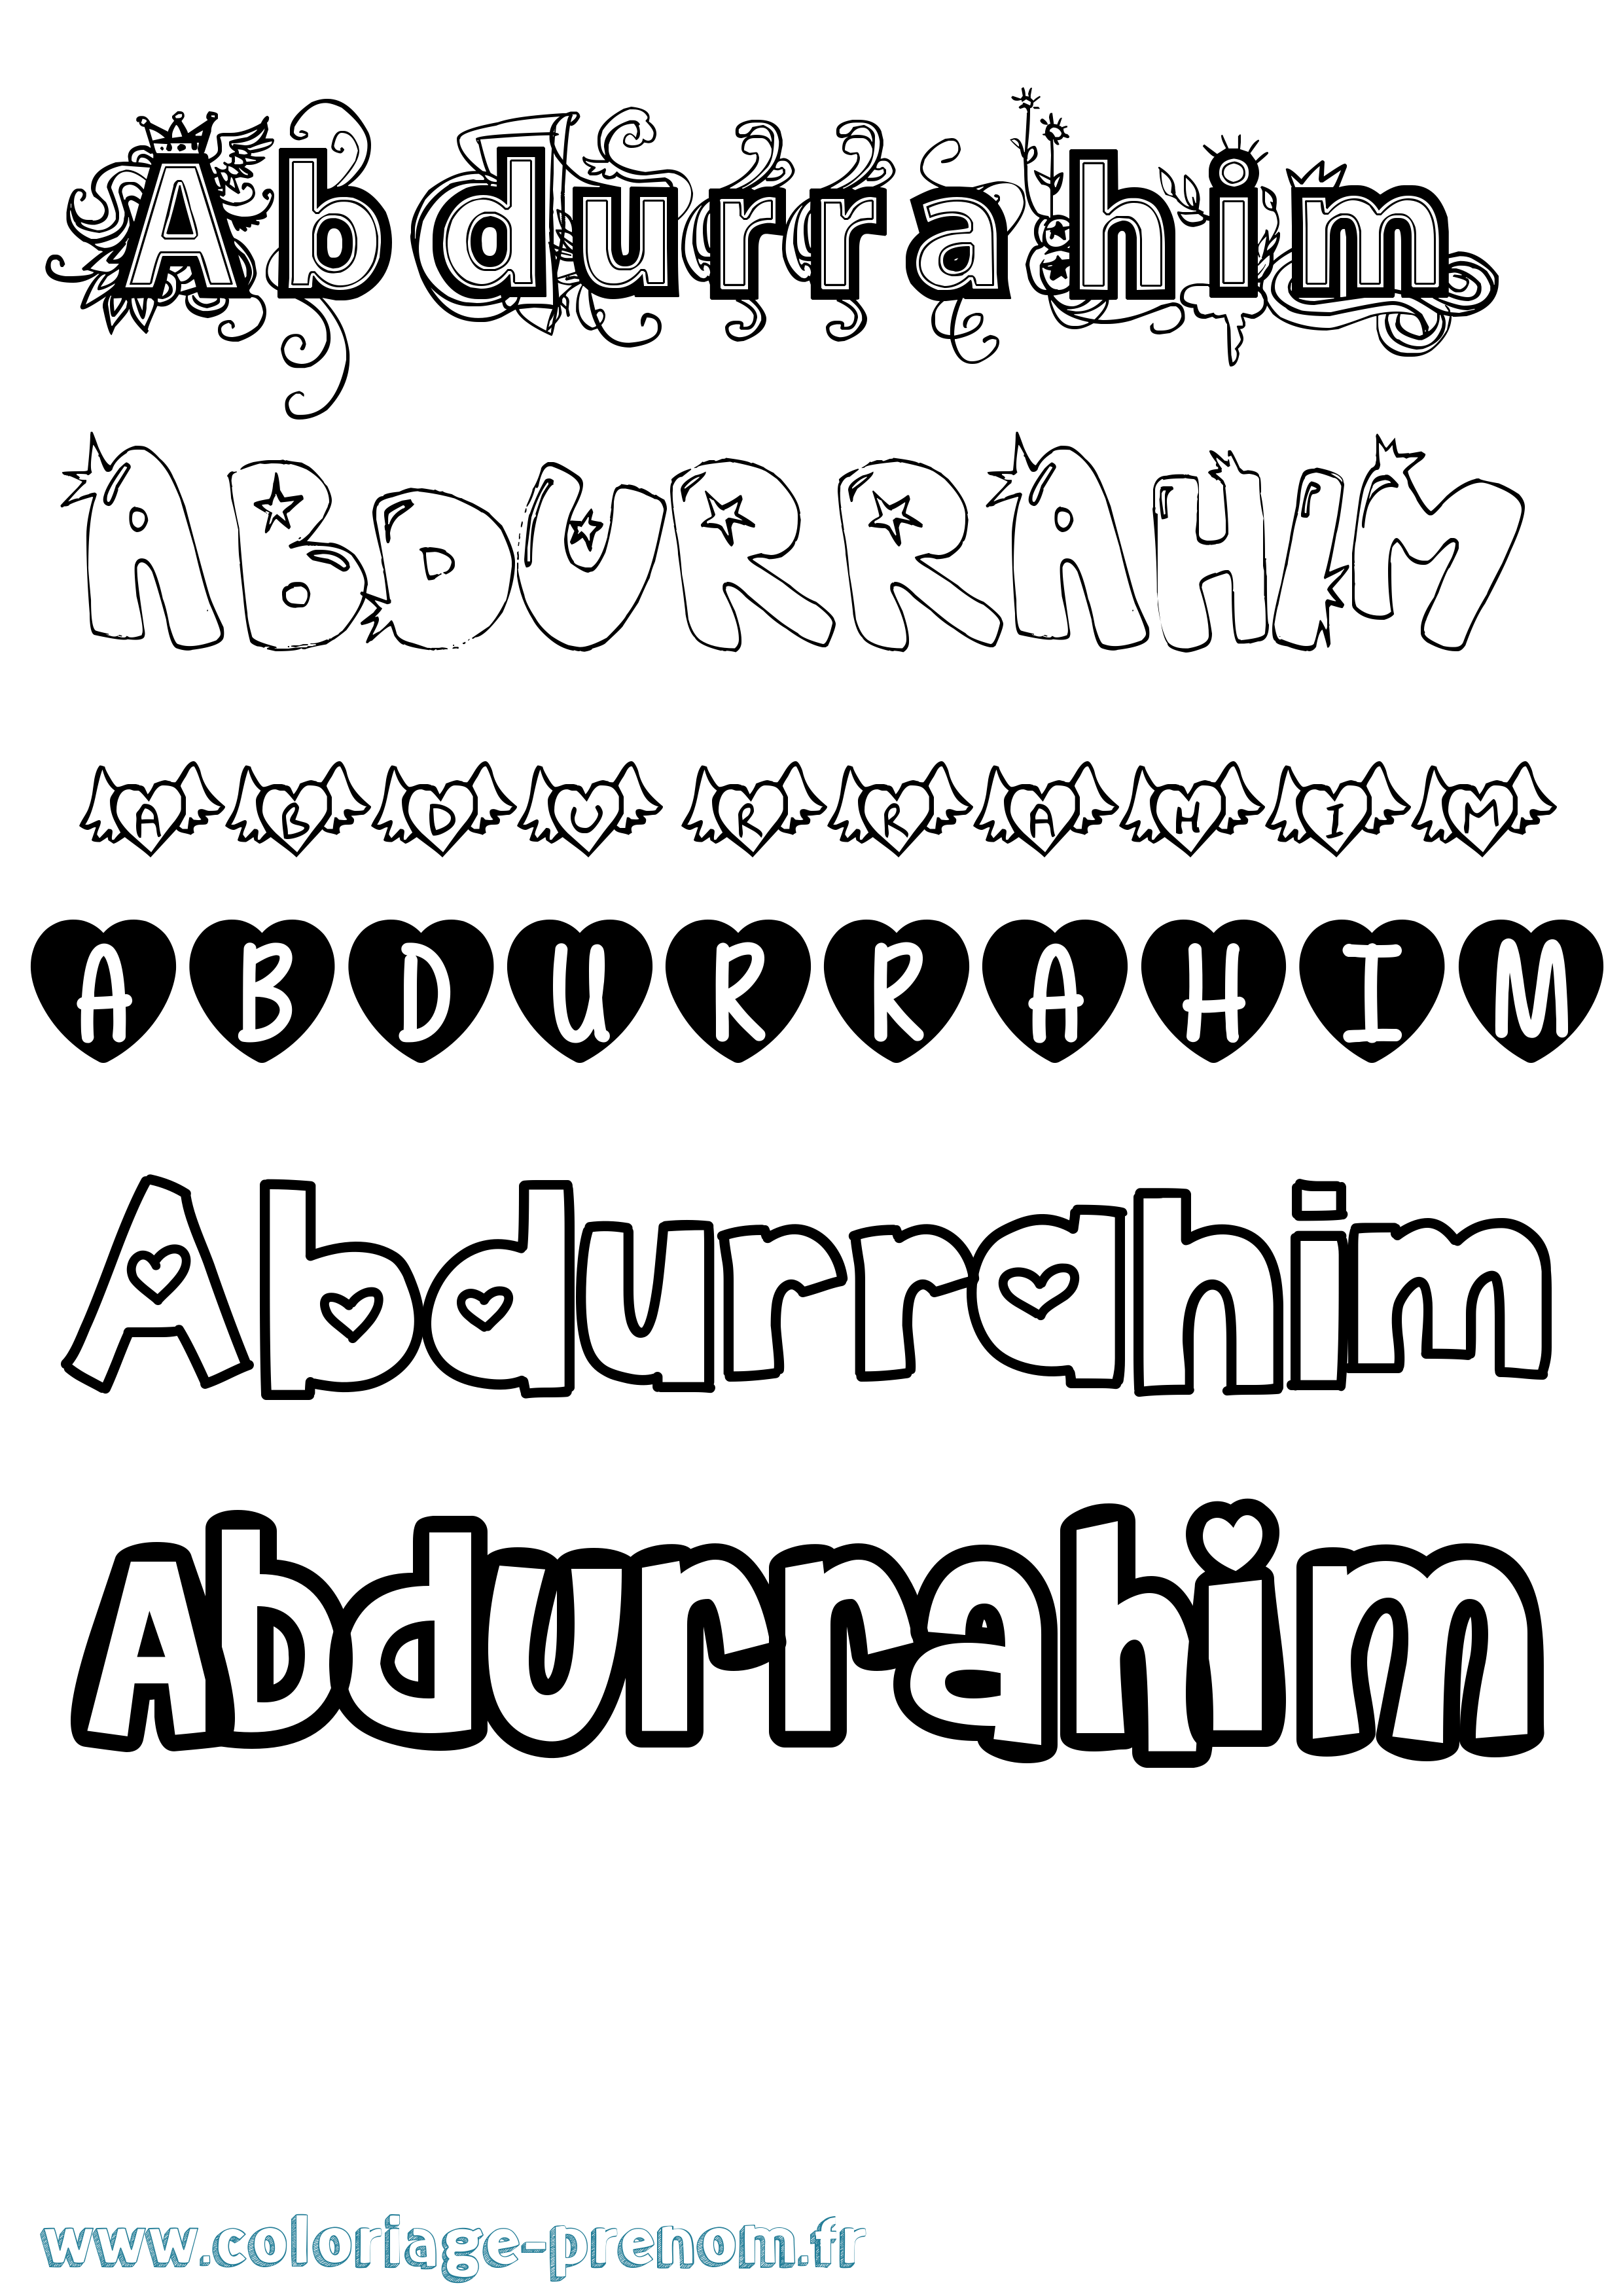 Coloriage prénom Abdurrahim Girly